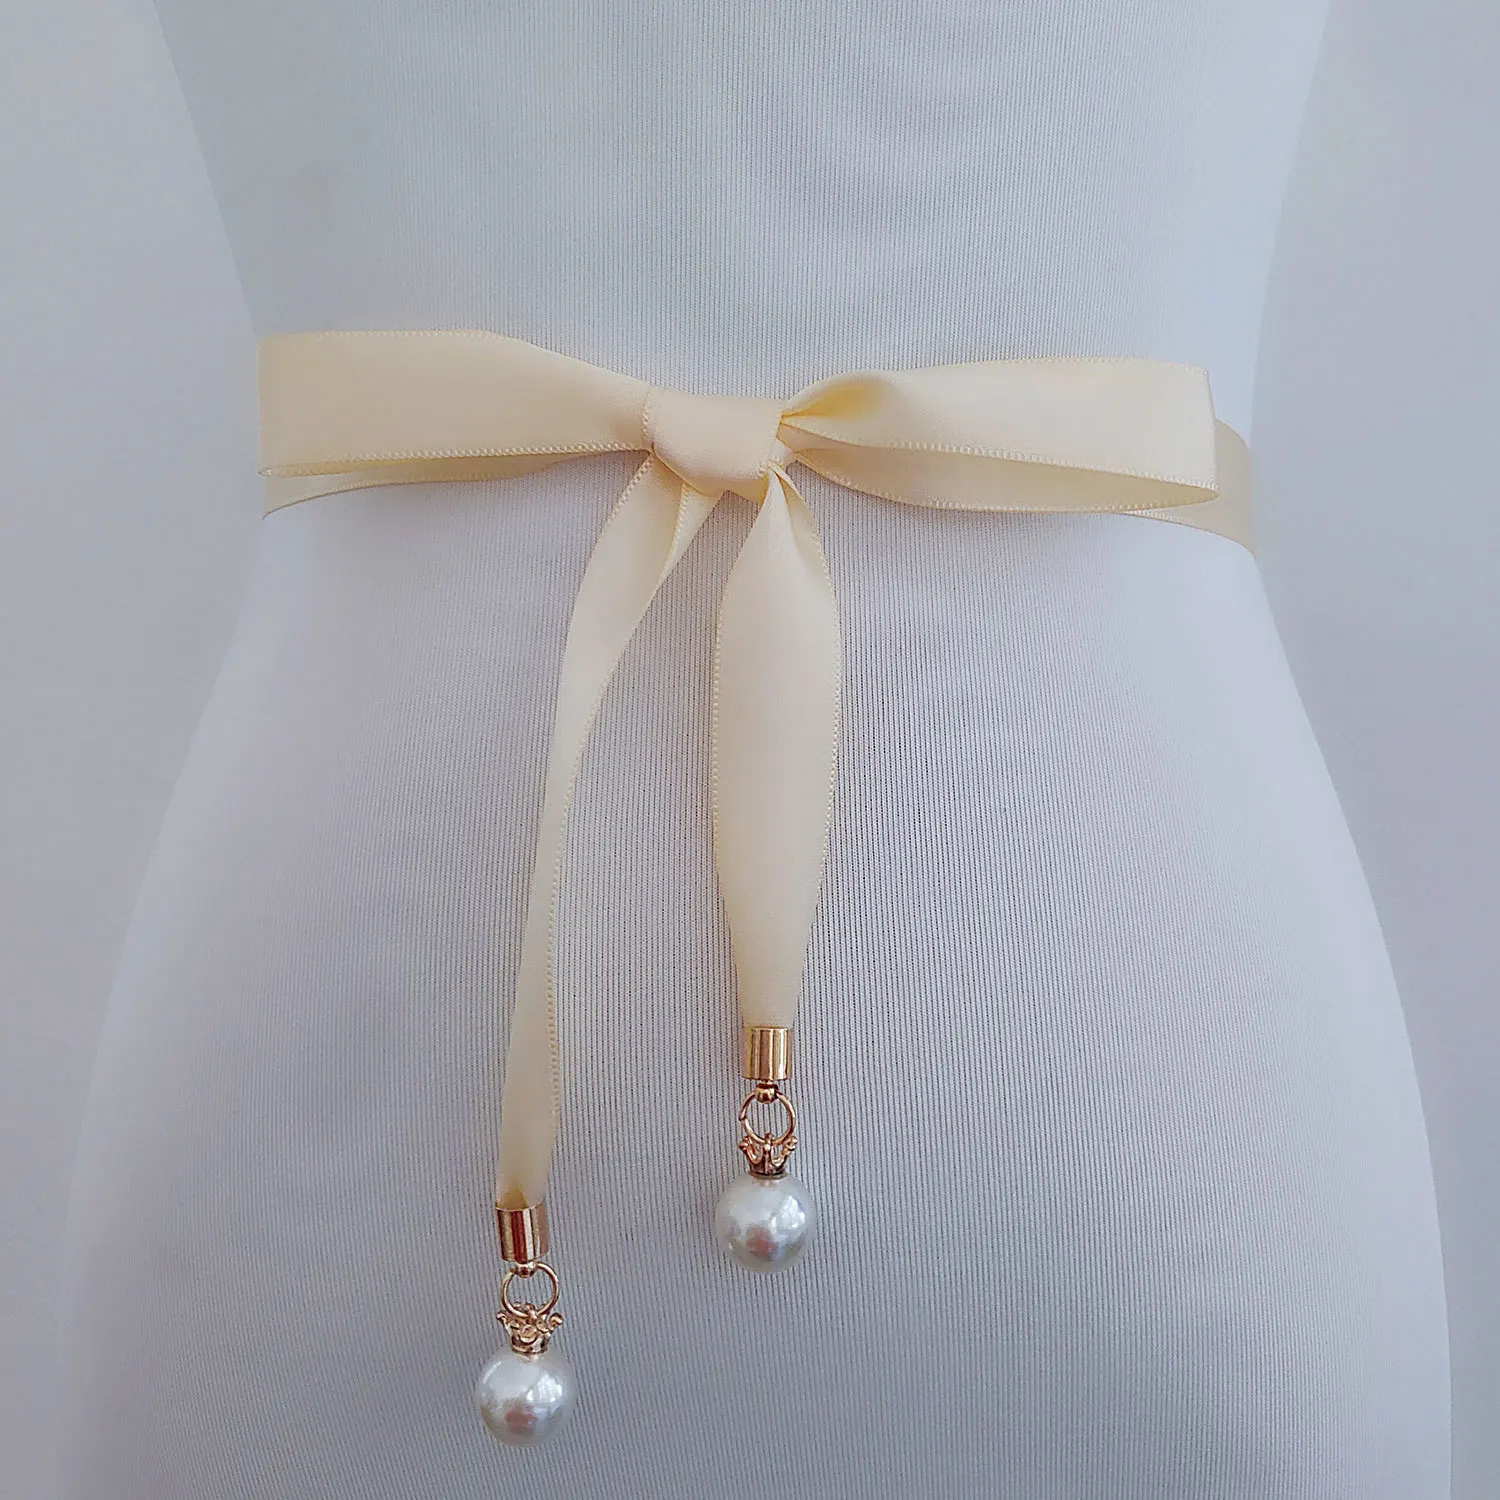 Жемчужное стильное платье на выпускной ремень высокого качества двусторонний атласный пояс жемчужный пояс тонкий на платье невесты свадебное платье пояс